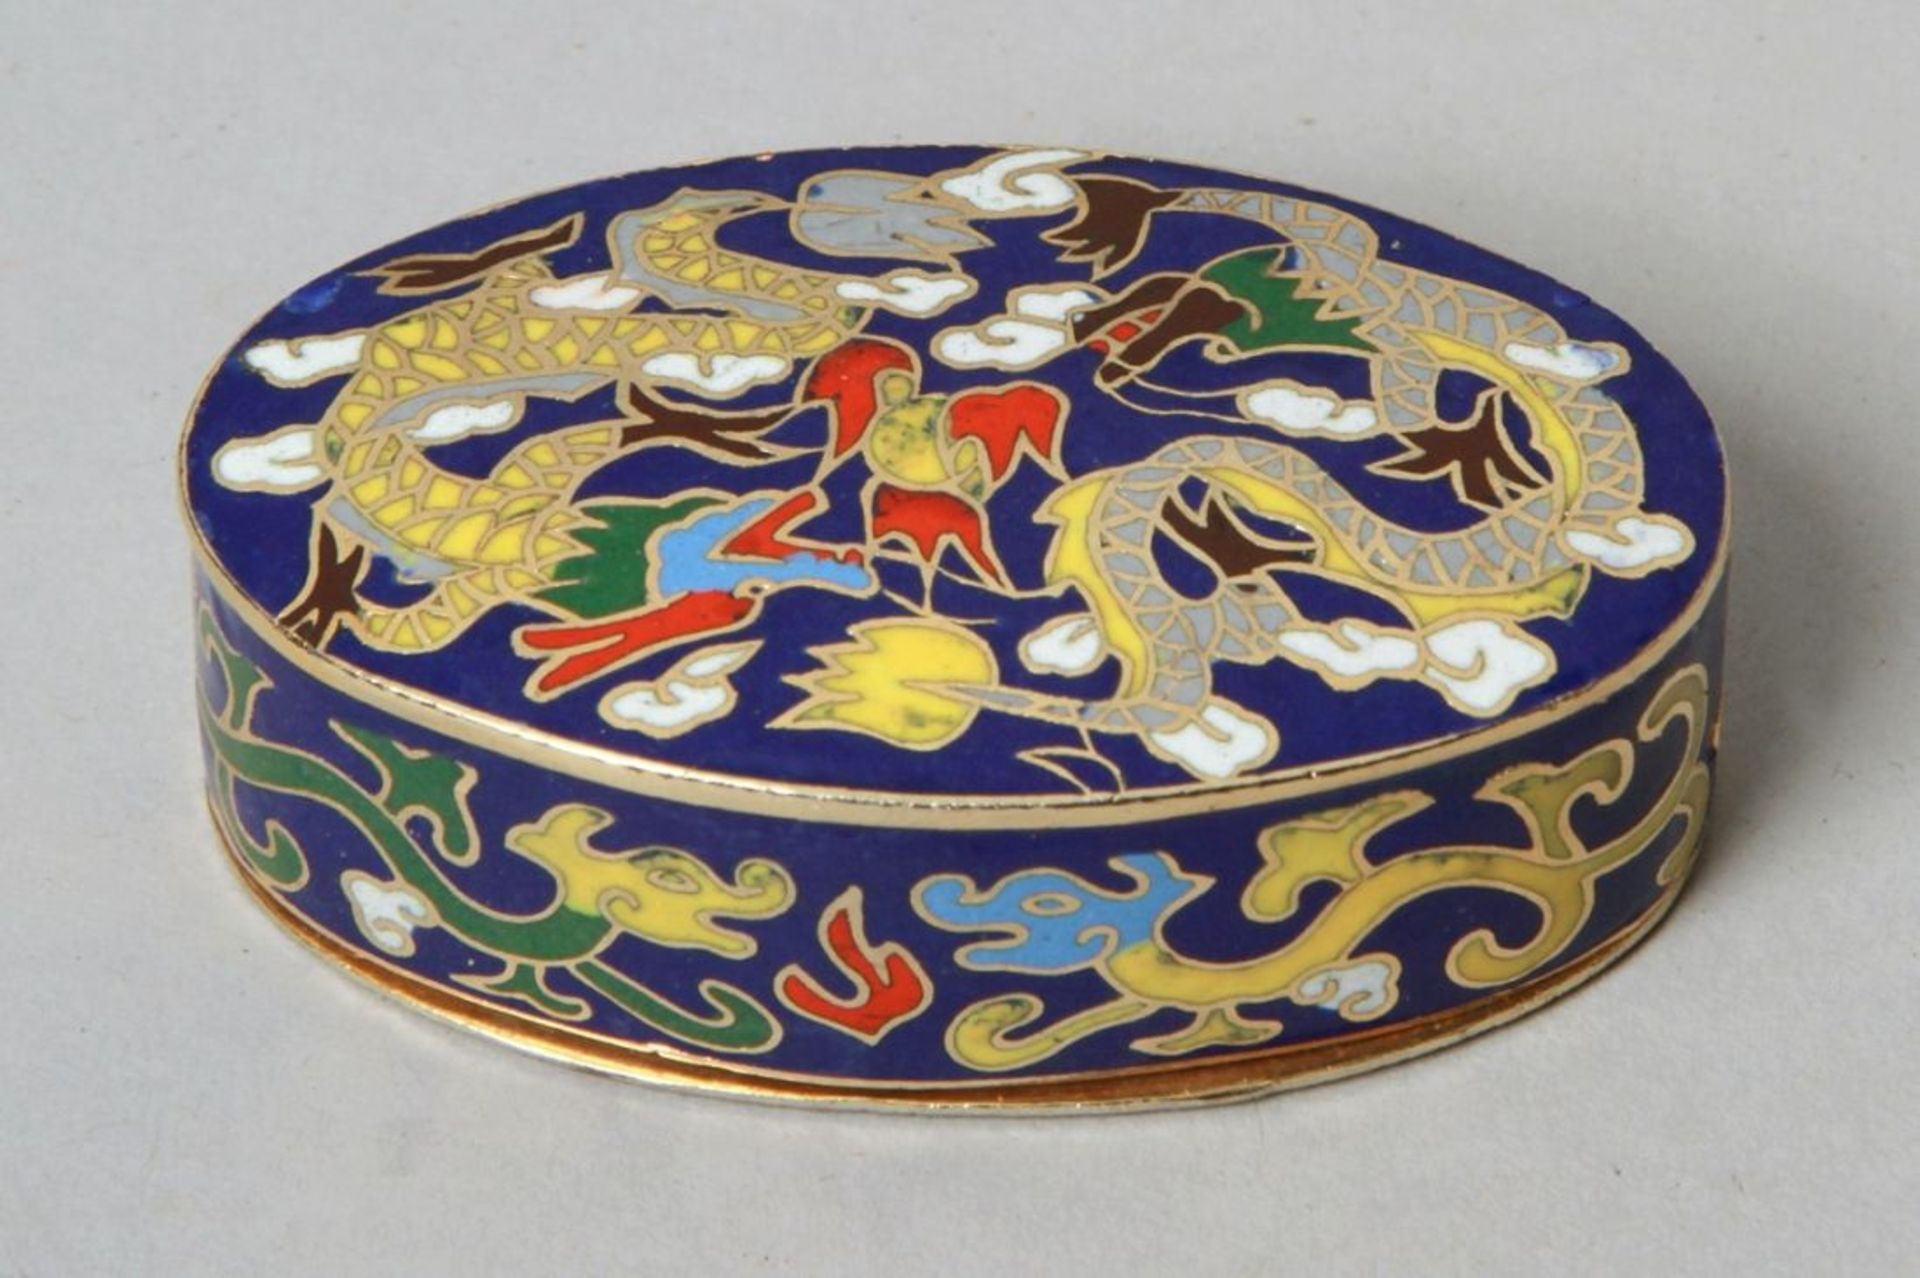 Cloisonné-Deckeldöschen, China, neuzeitlich, ovale Form mit Stülpdeckel, polychromausemailliert